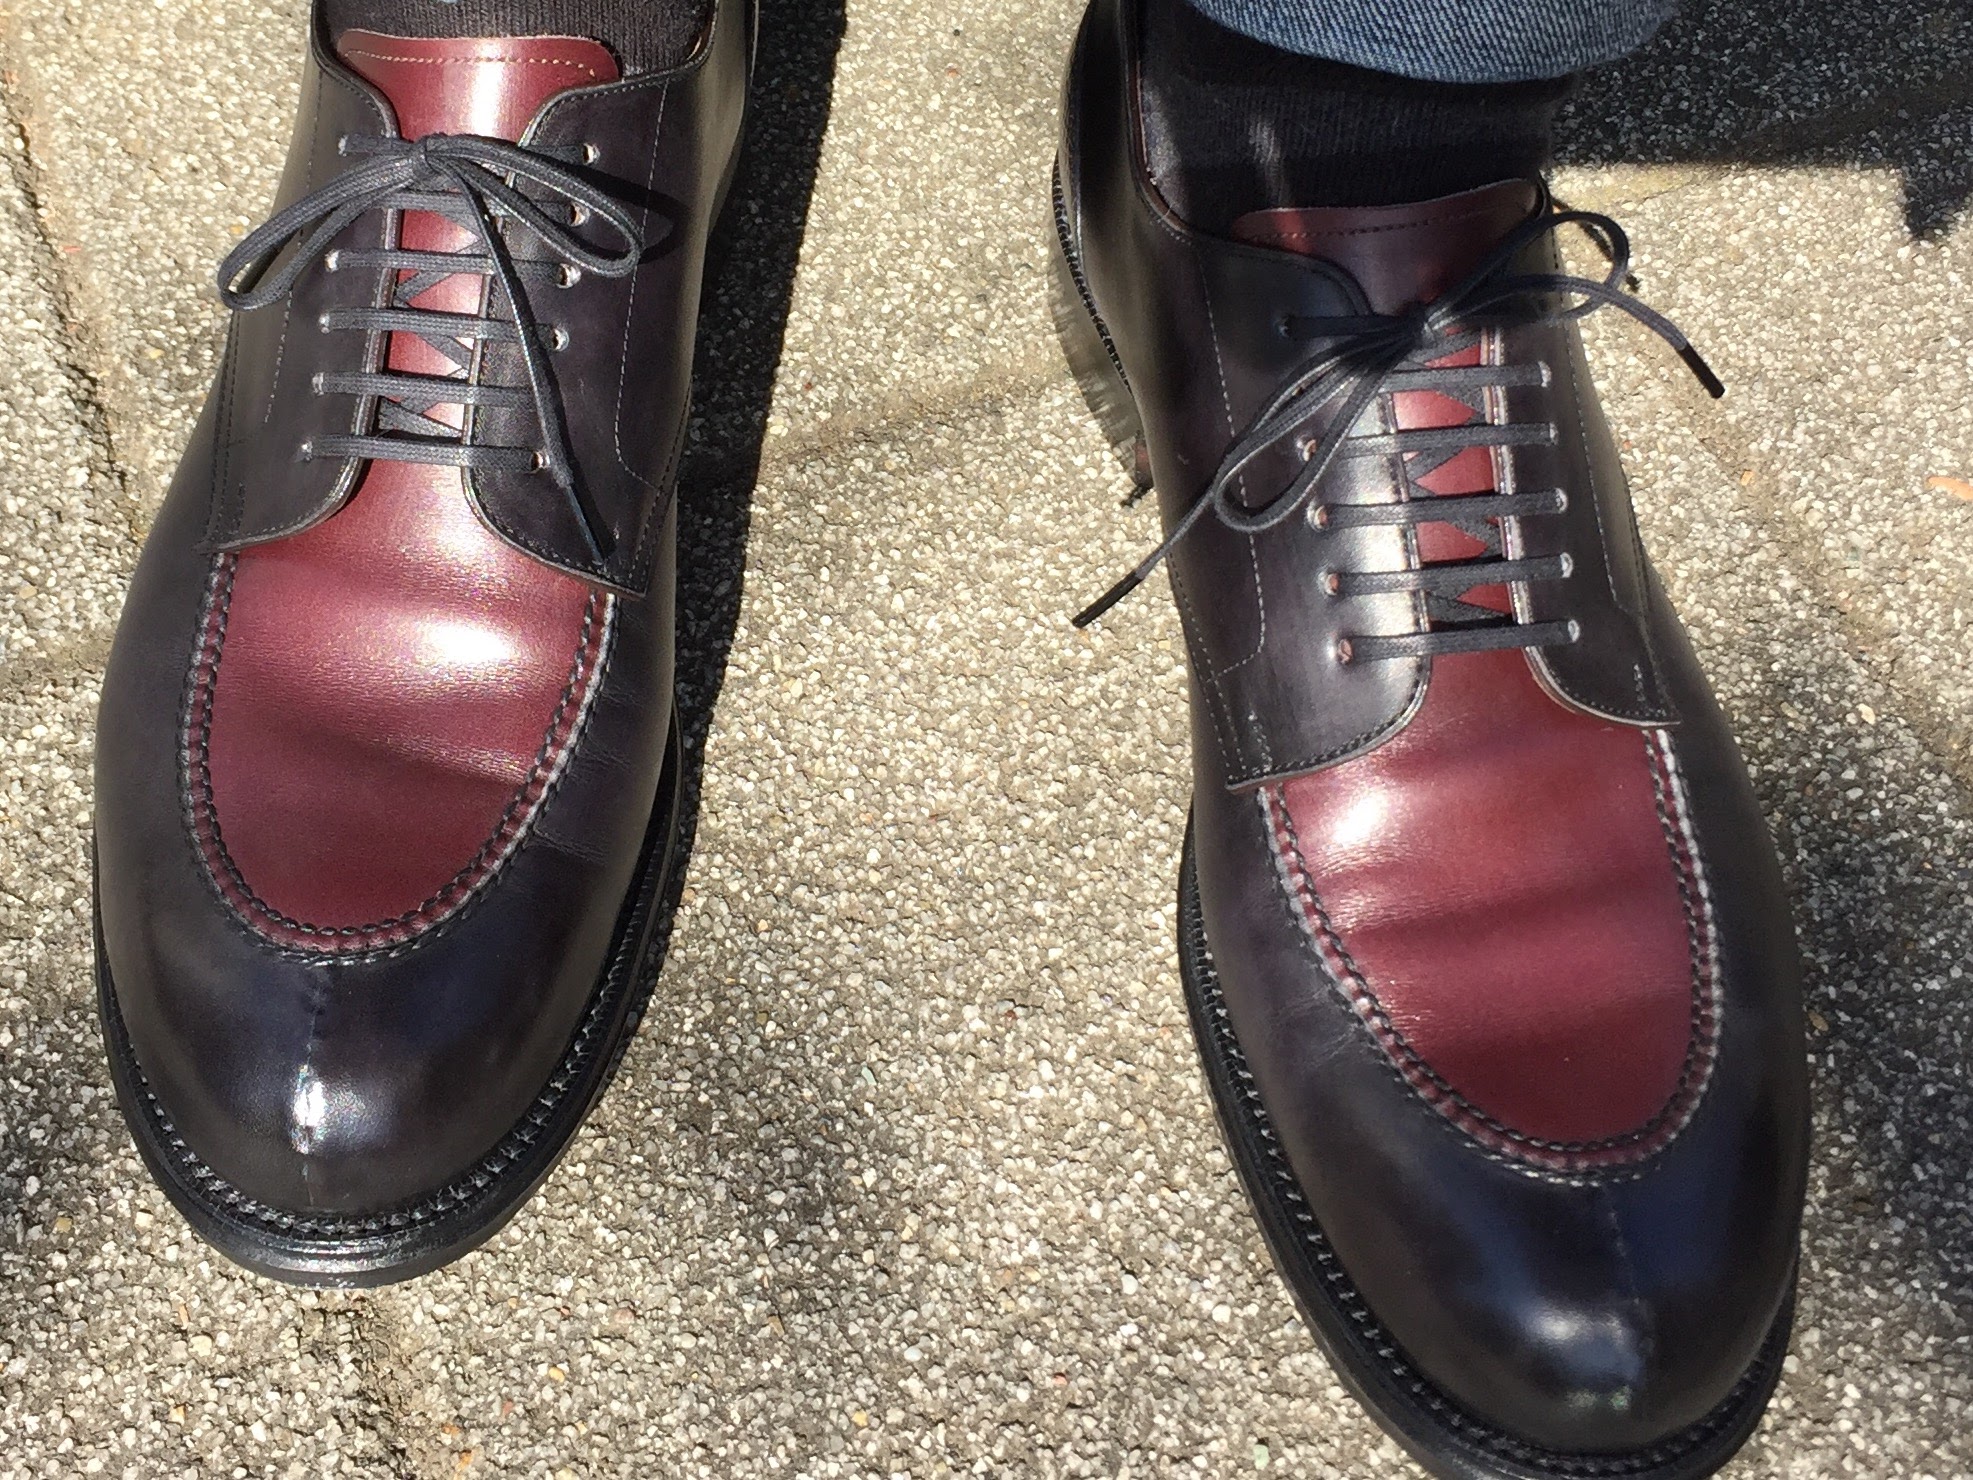 1056-201510] 宮城興業 和創良靴は決して靴マニアだけの特殊な世界では